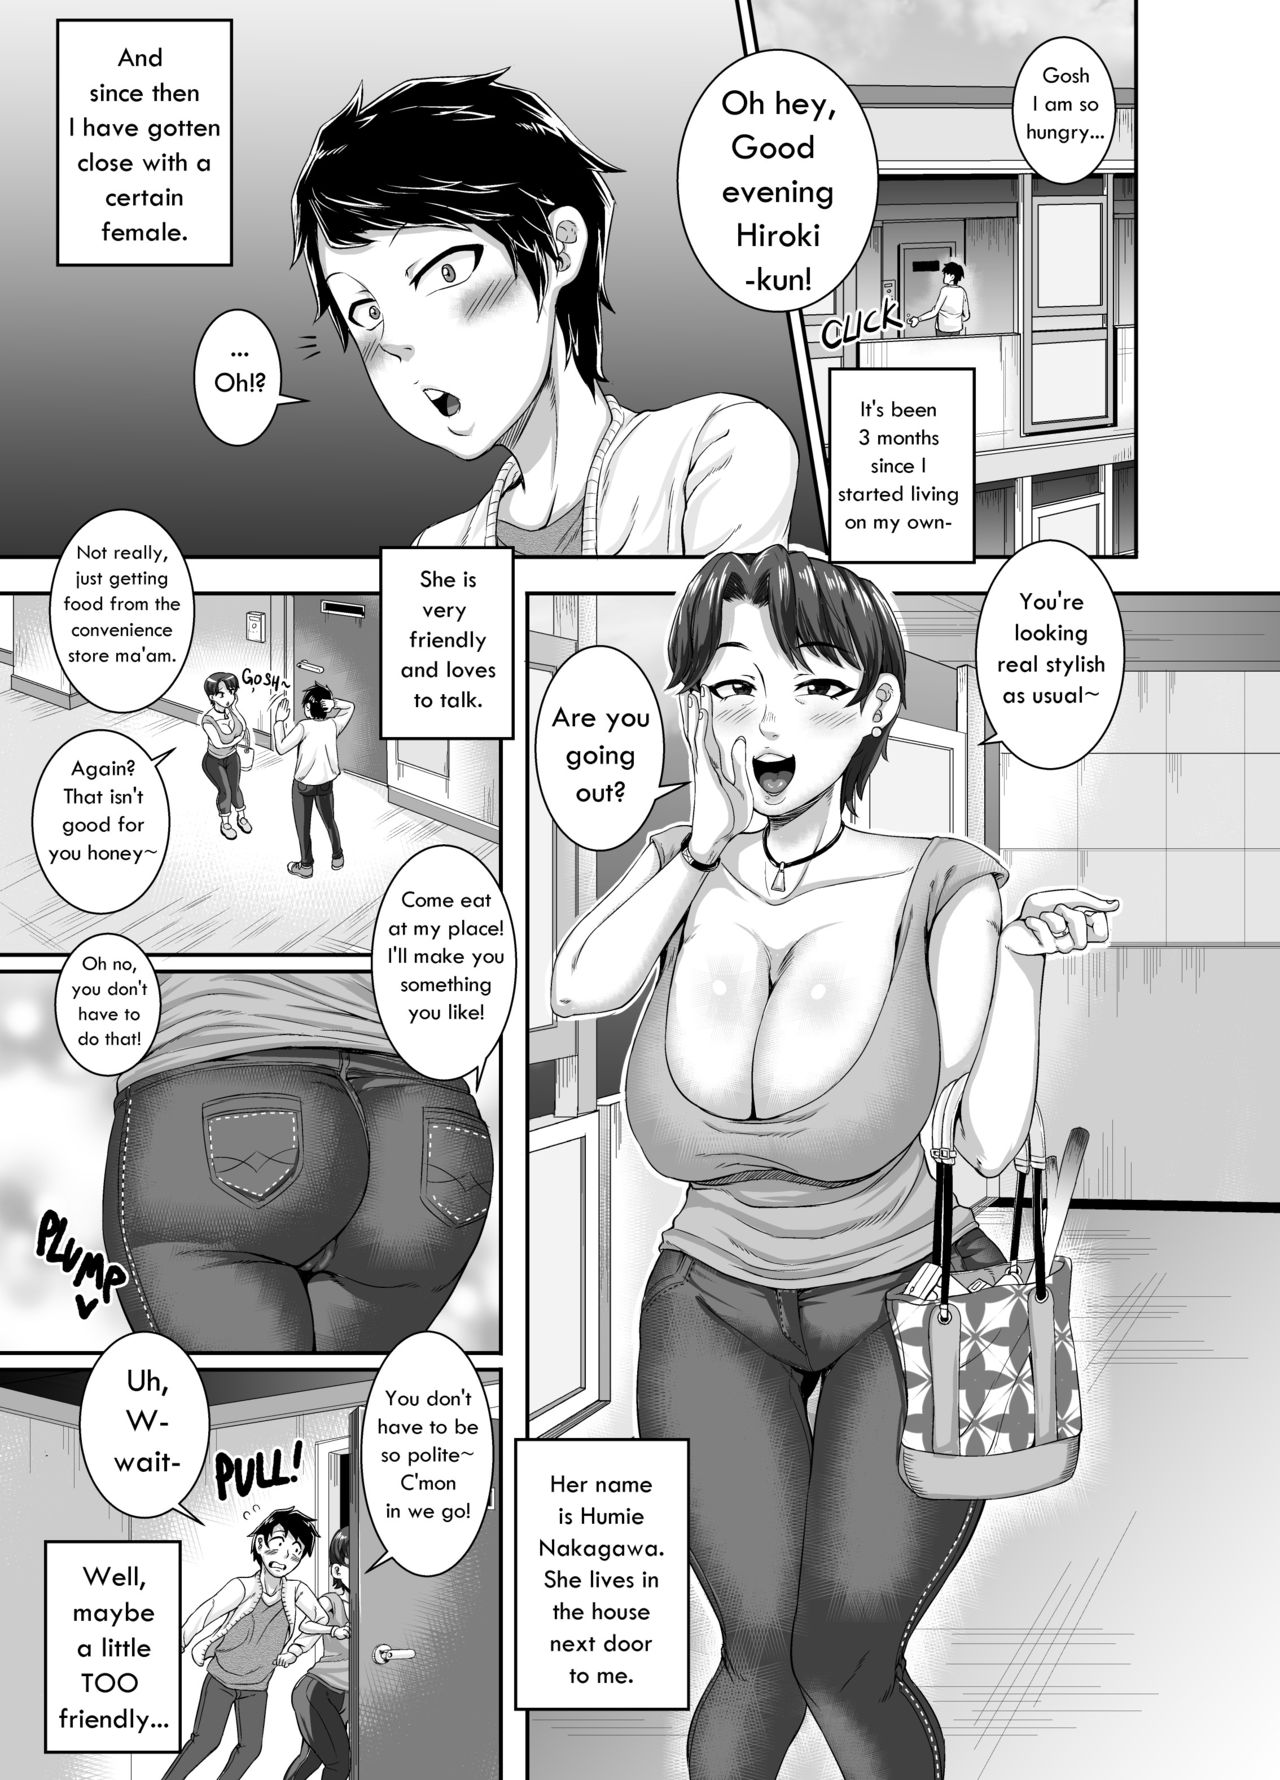 1280px x 1780px - Seduction From Next Door [Juna Juna Juice] - Free Hentai Manga, Adult  Webtoon, Doujinshi Manga and Mature Comics